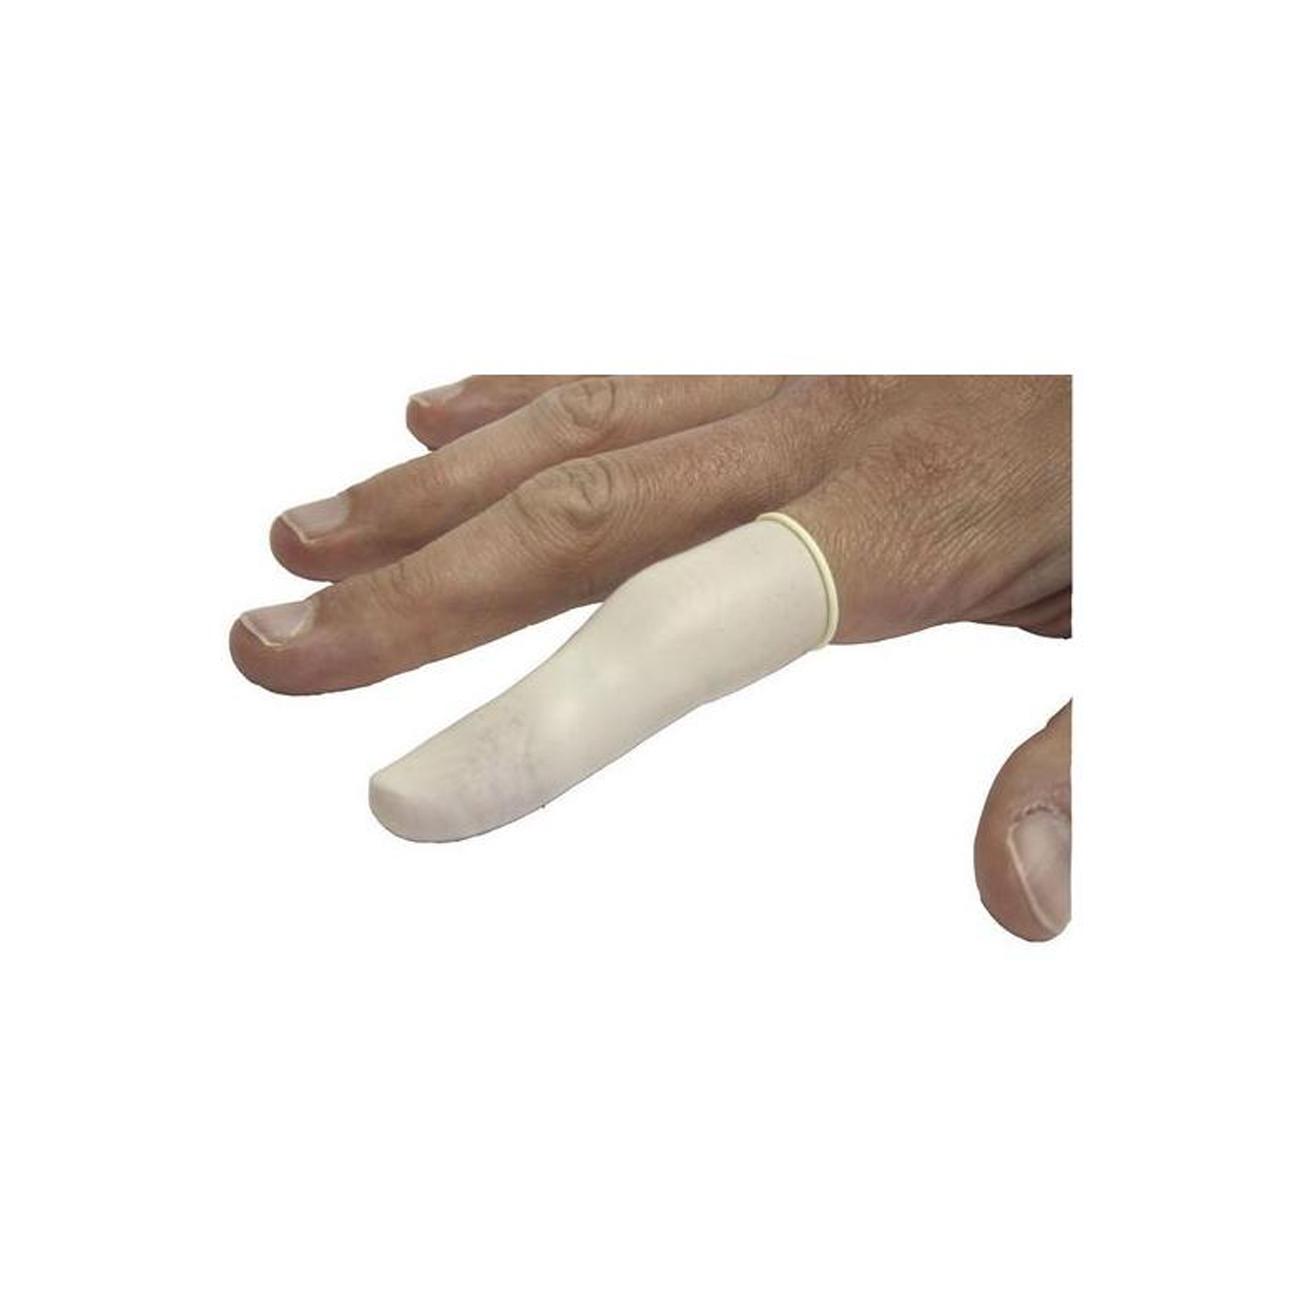 Fingerling Verband (medium) 100 Stück